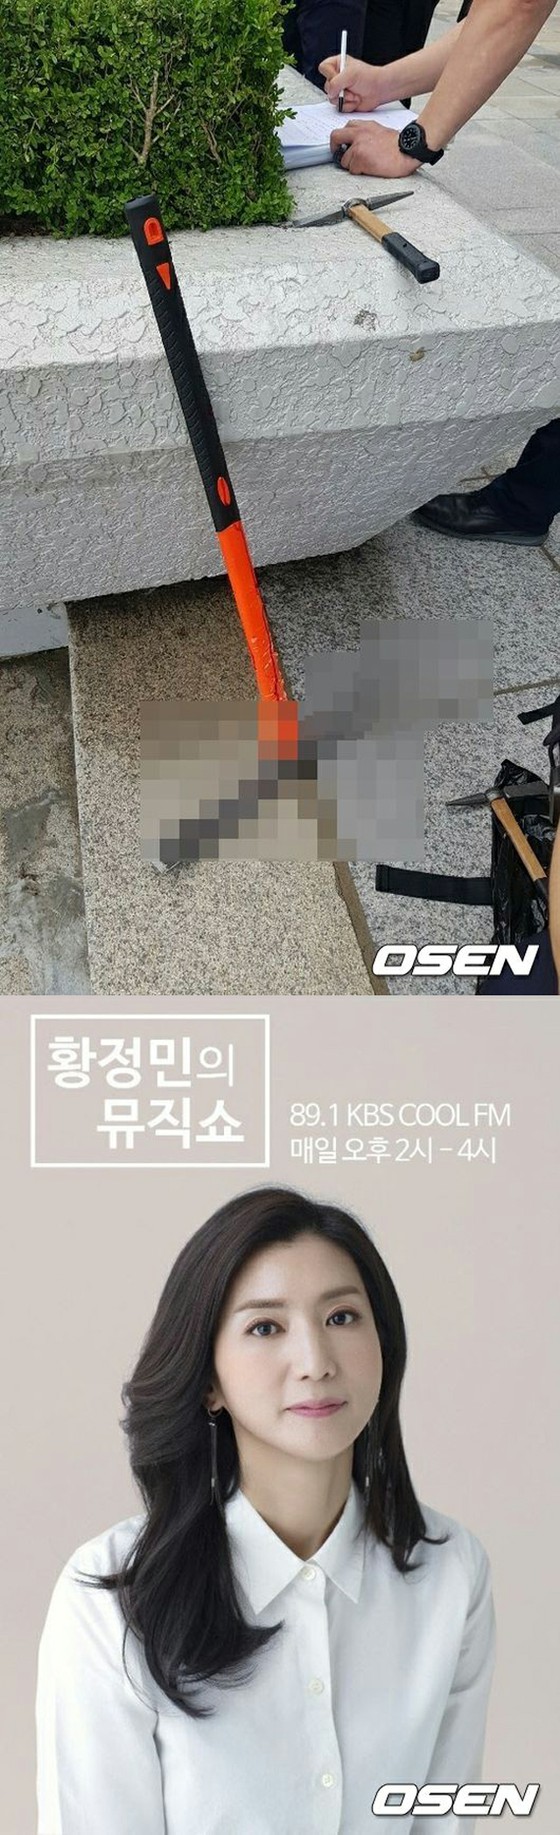 KBS, sebuah kasus di mana jendela kaca pecah di studio terbuka radio selama siaran langsung ... Sebuah adegan mengejutkan tanpa merusak nyawa